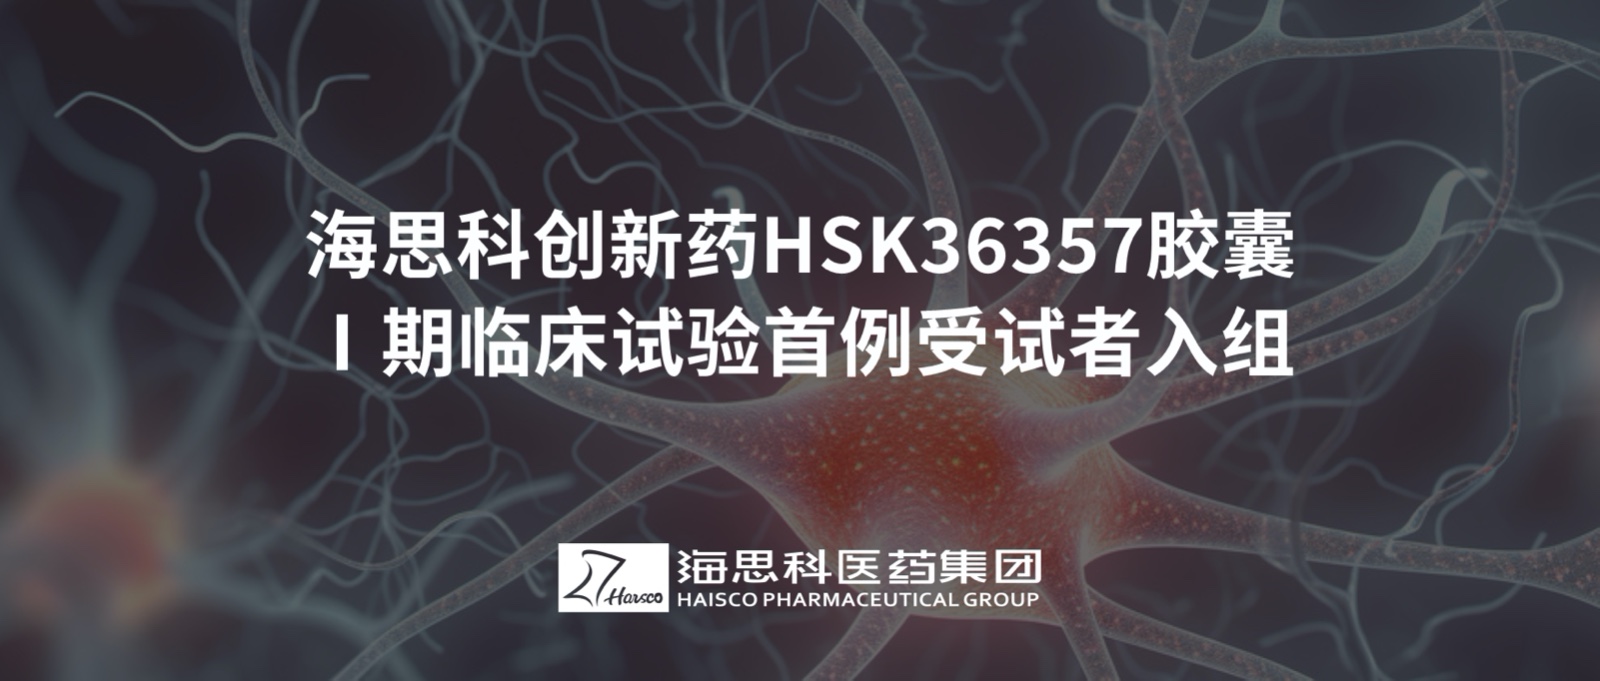 太阳集团tyc5997创新药HSK36357胶囊Ⅰ期临床试验首例受试者入组